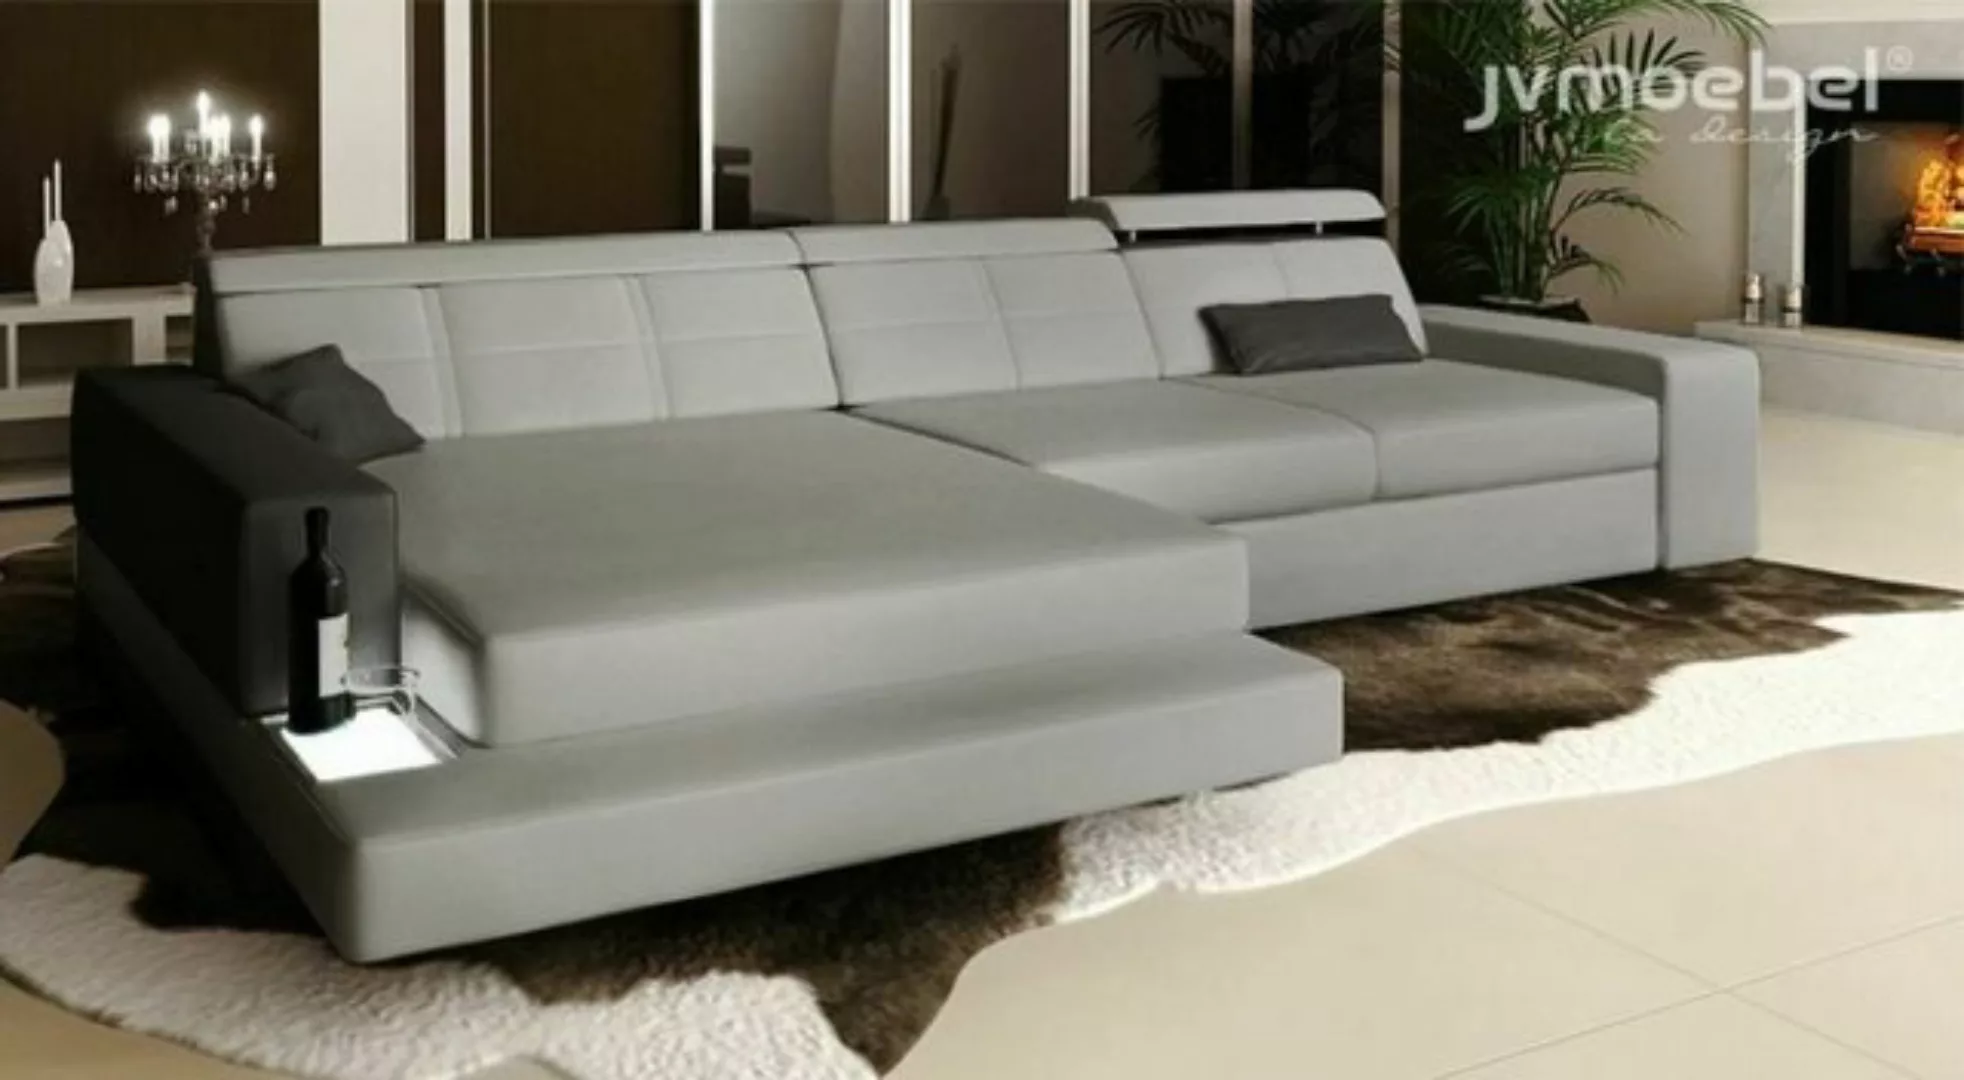 JVmoebel Ecksofa, Design Ecksofa L form Couch Polster Textil Sofas Luxus Wo günstig online kaufen